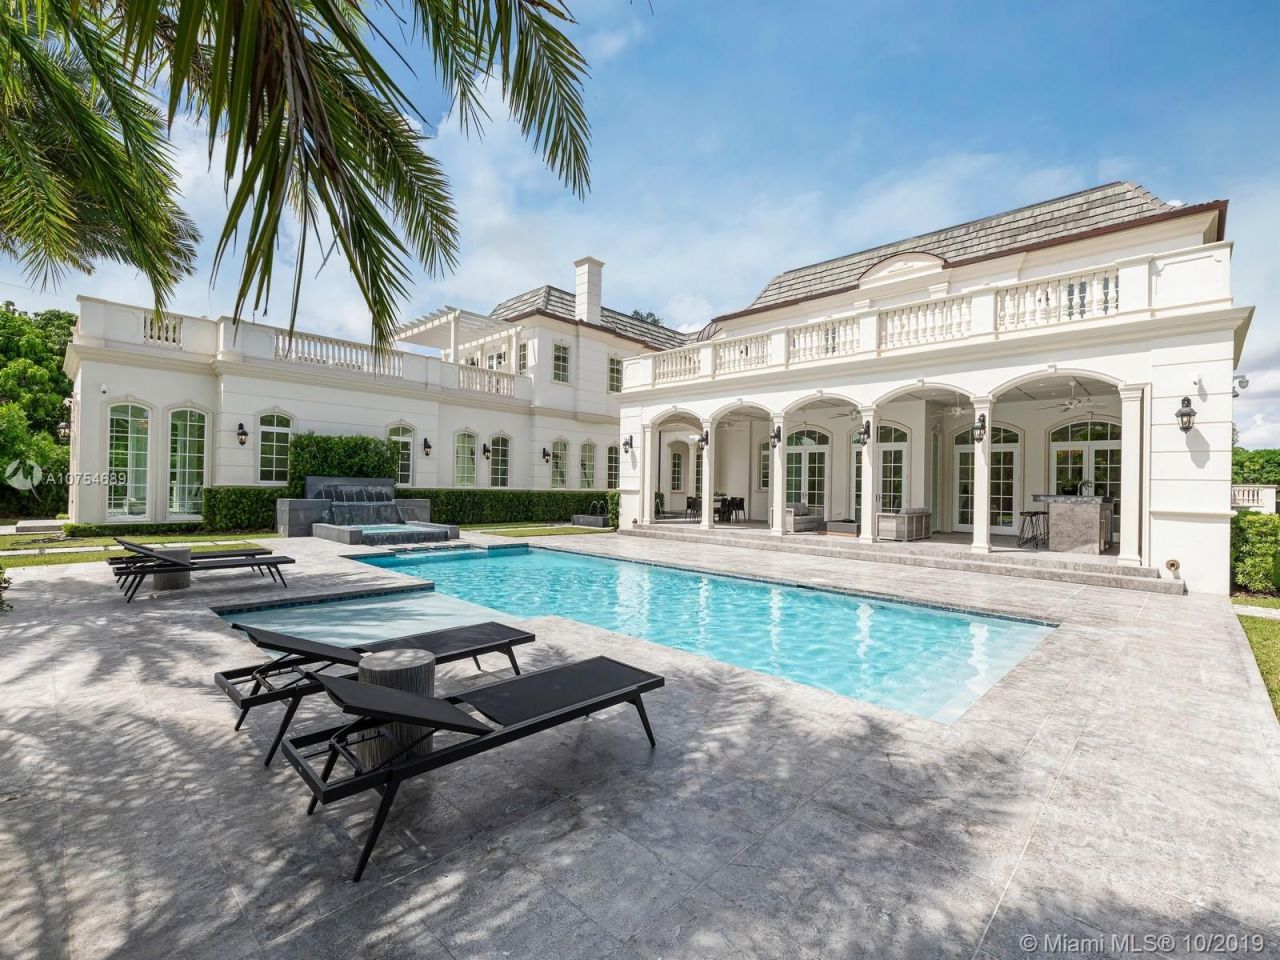 Manor in Miami, USA, 1 000 sq.m - picture 1